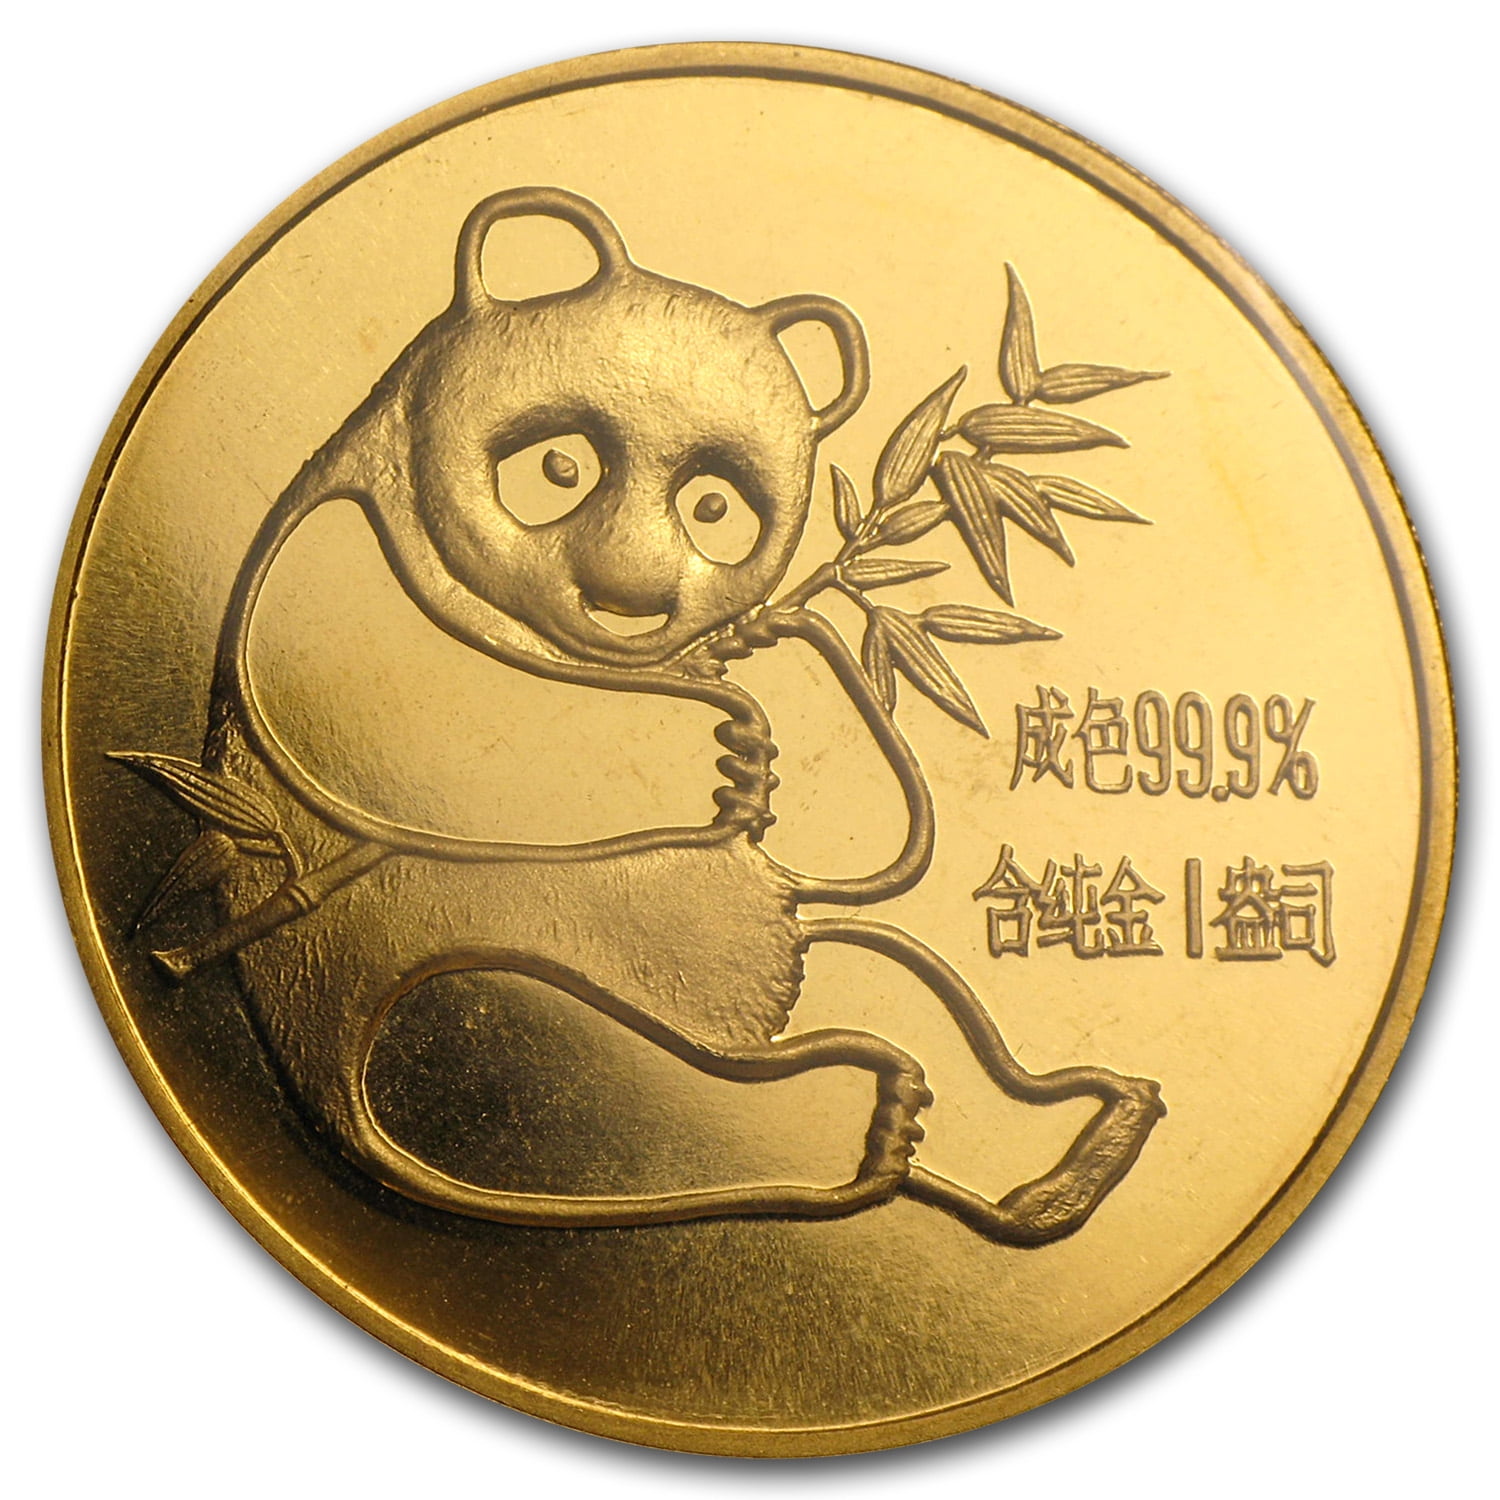 China-Mint - 1982 China 1 oz Gold Panda BU (Sealed) - Walmart.com ...